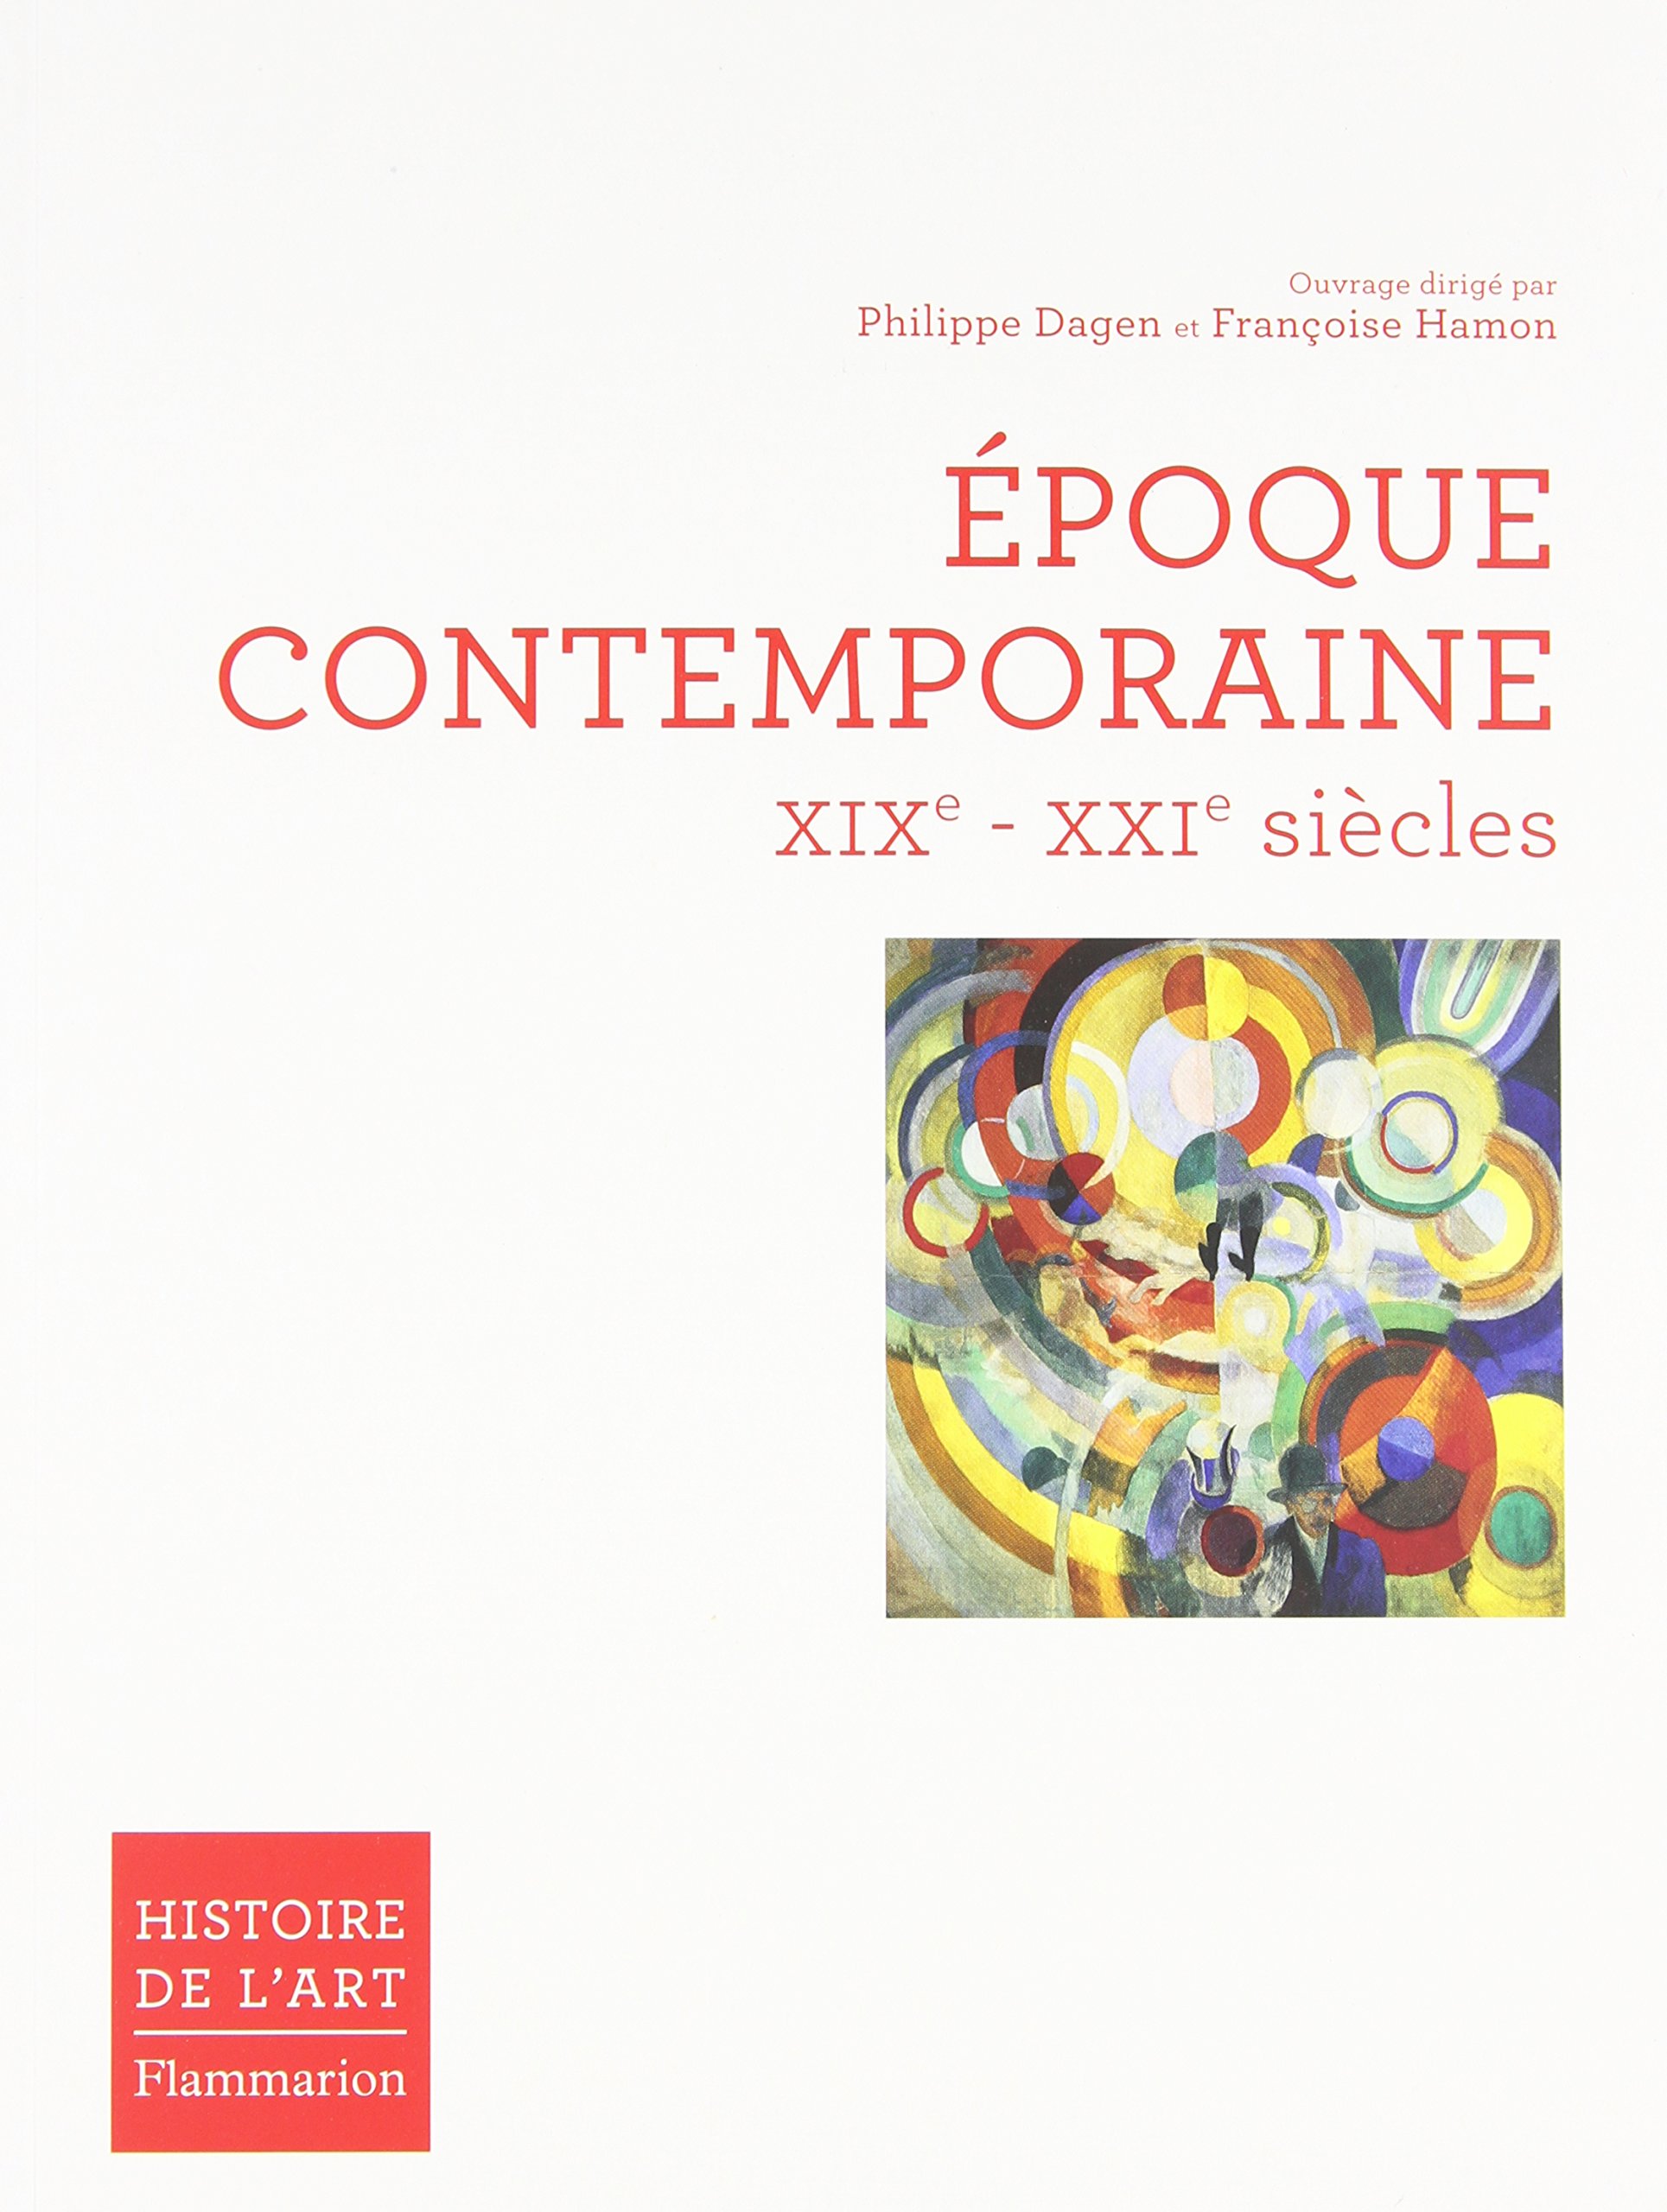 Epoque contemporaine XIXe - XXIe siècle, (Histoire de l'art), 2010, 627 p.